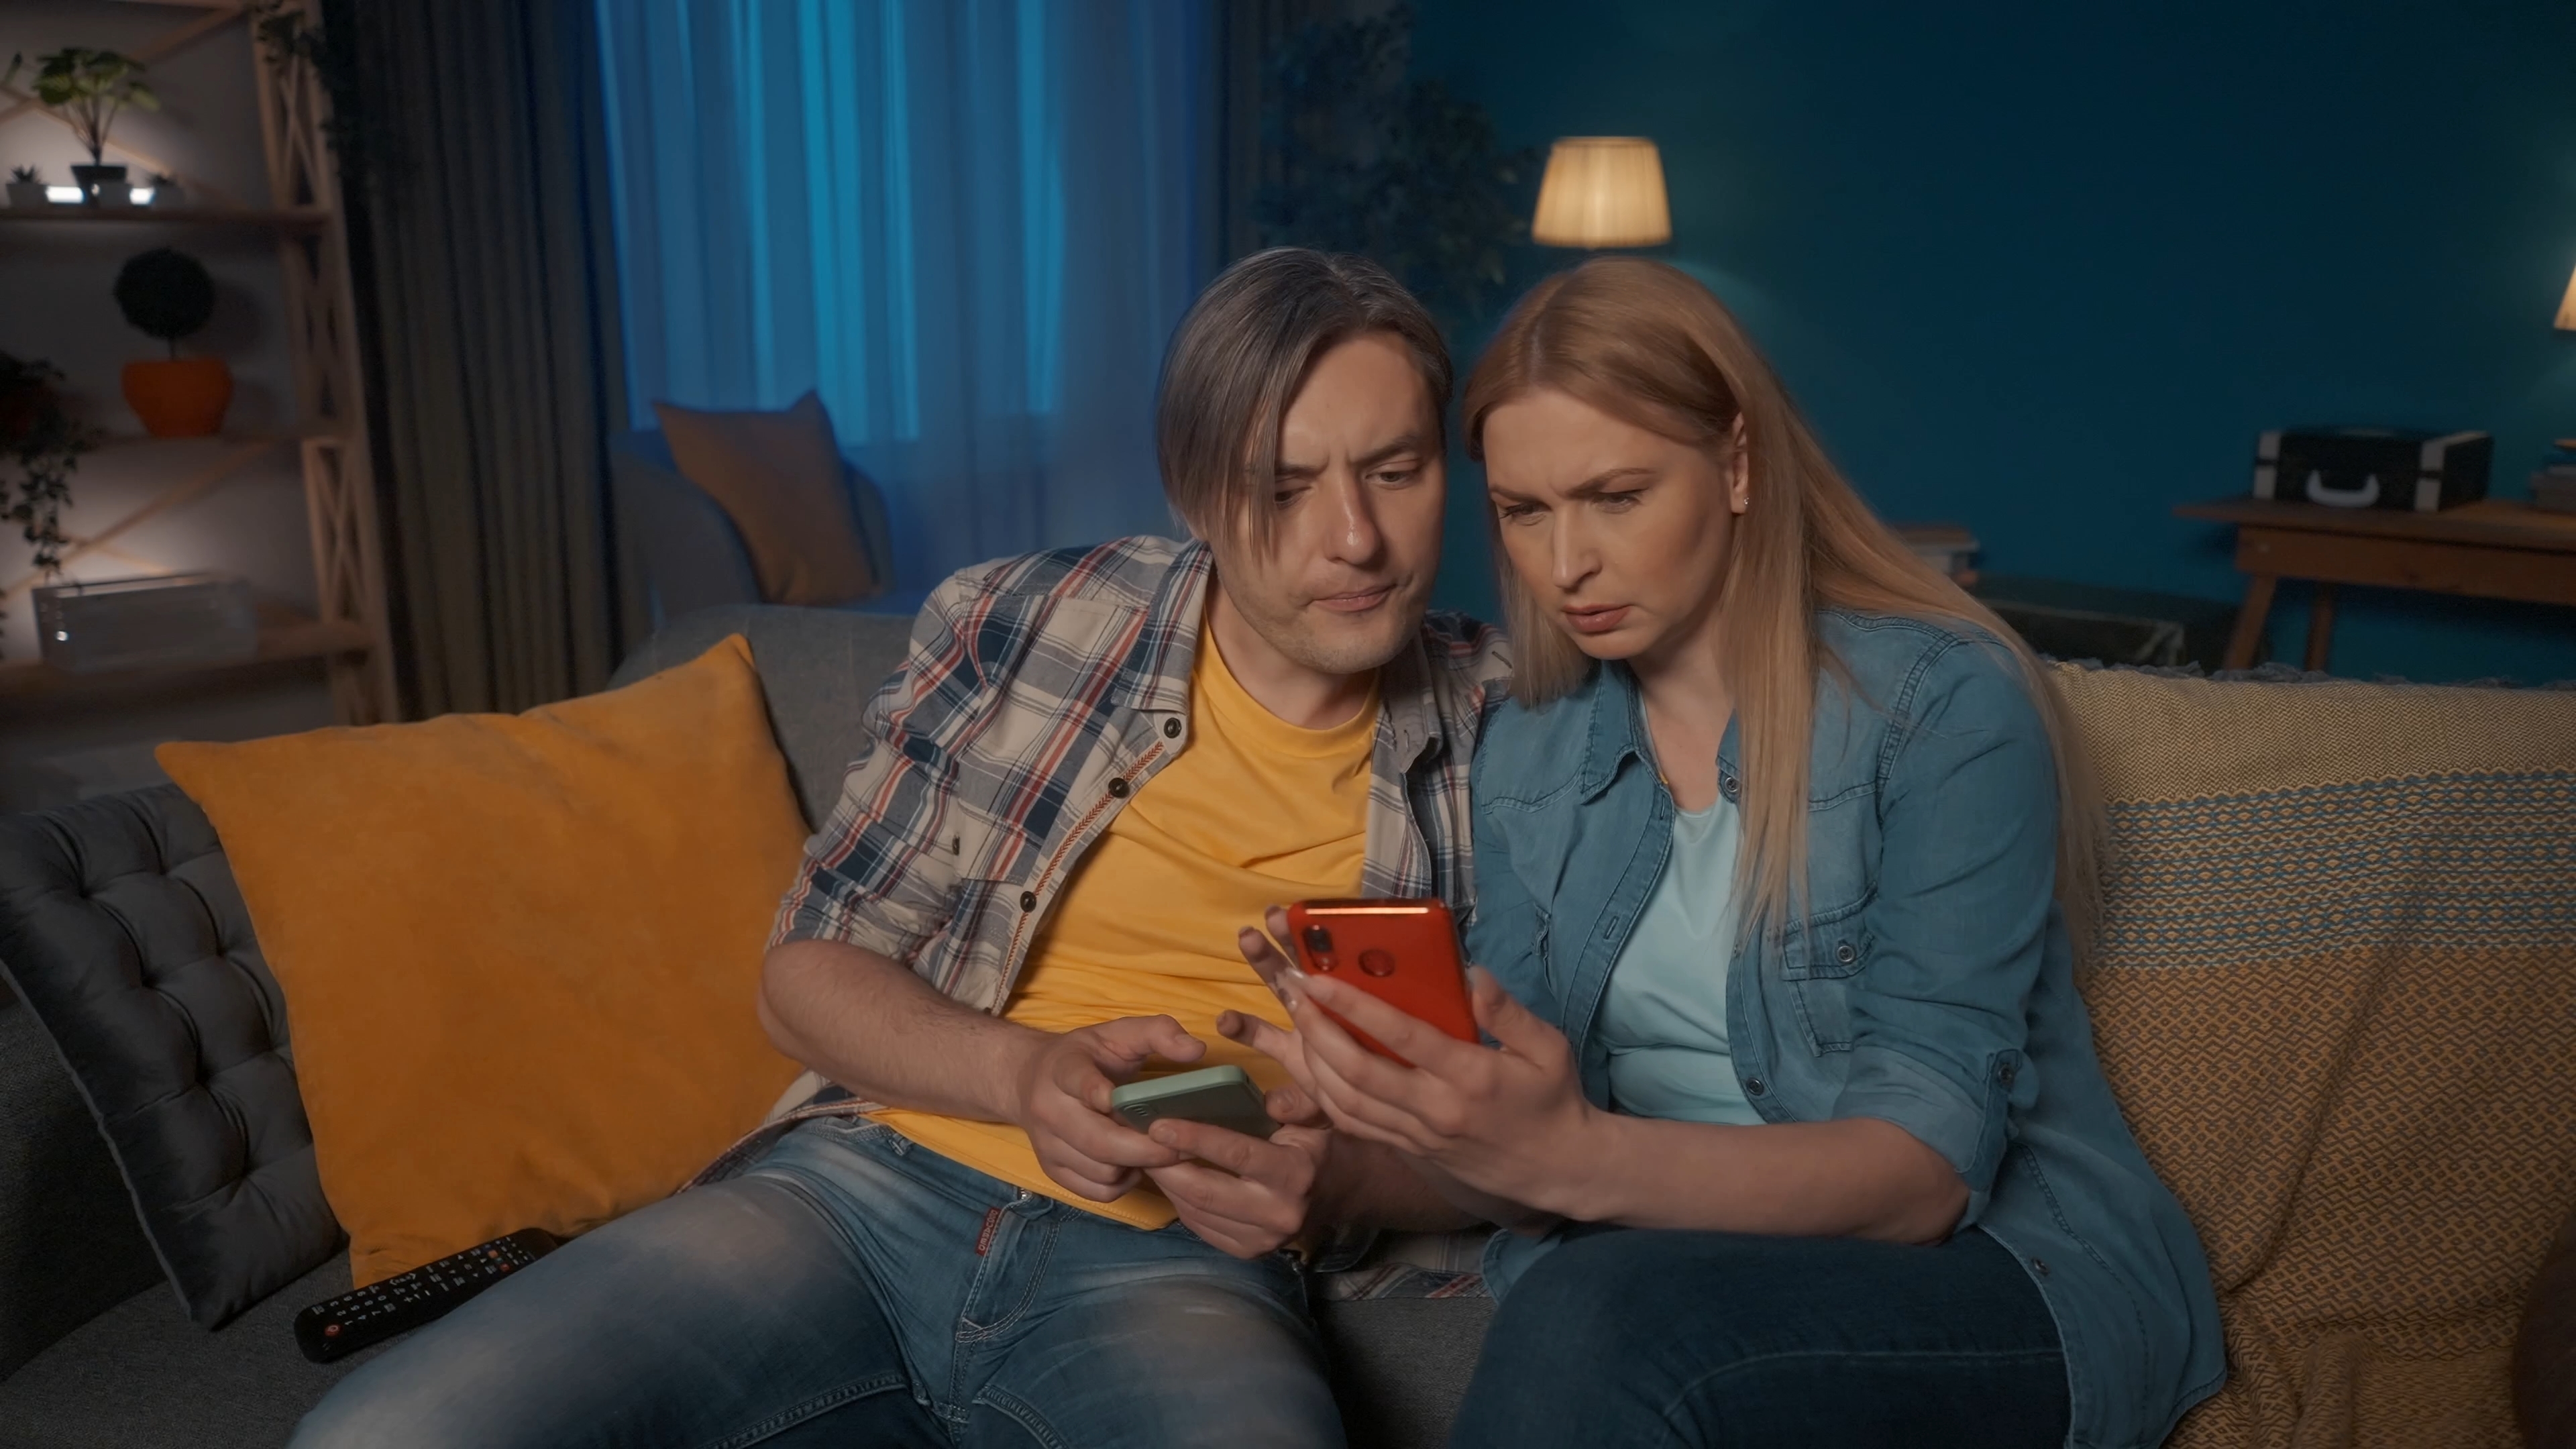 Un homme et une femme regardant un téléphone portable | Source : Shutterstock